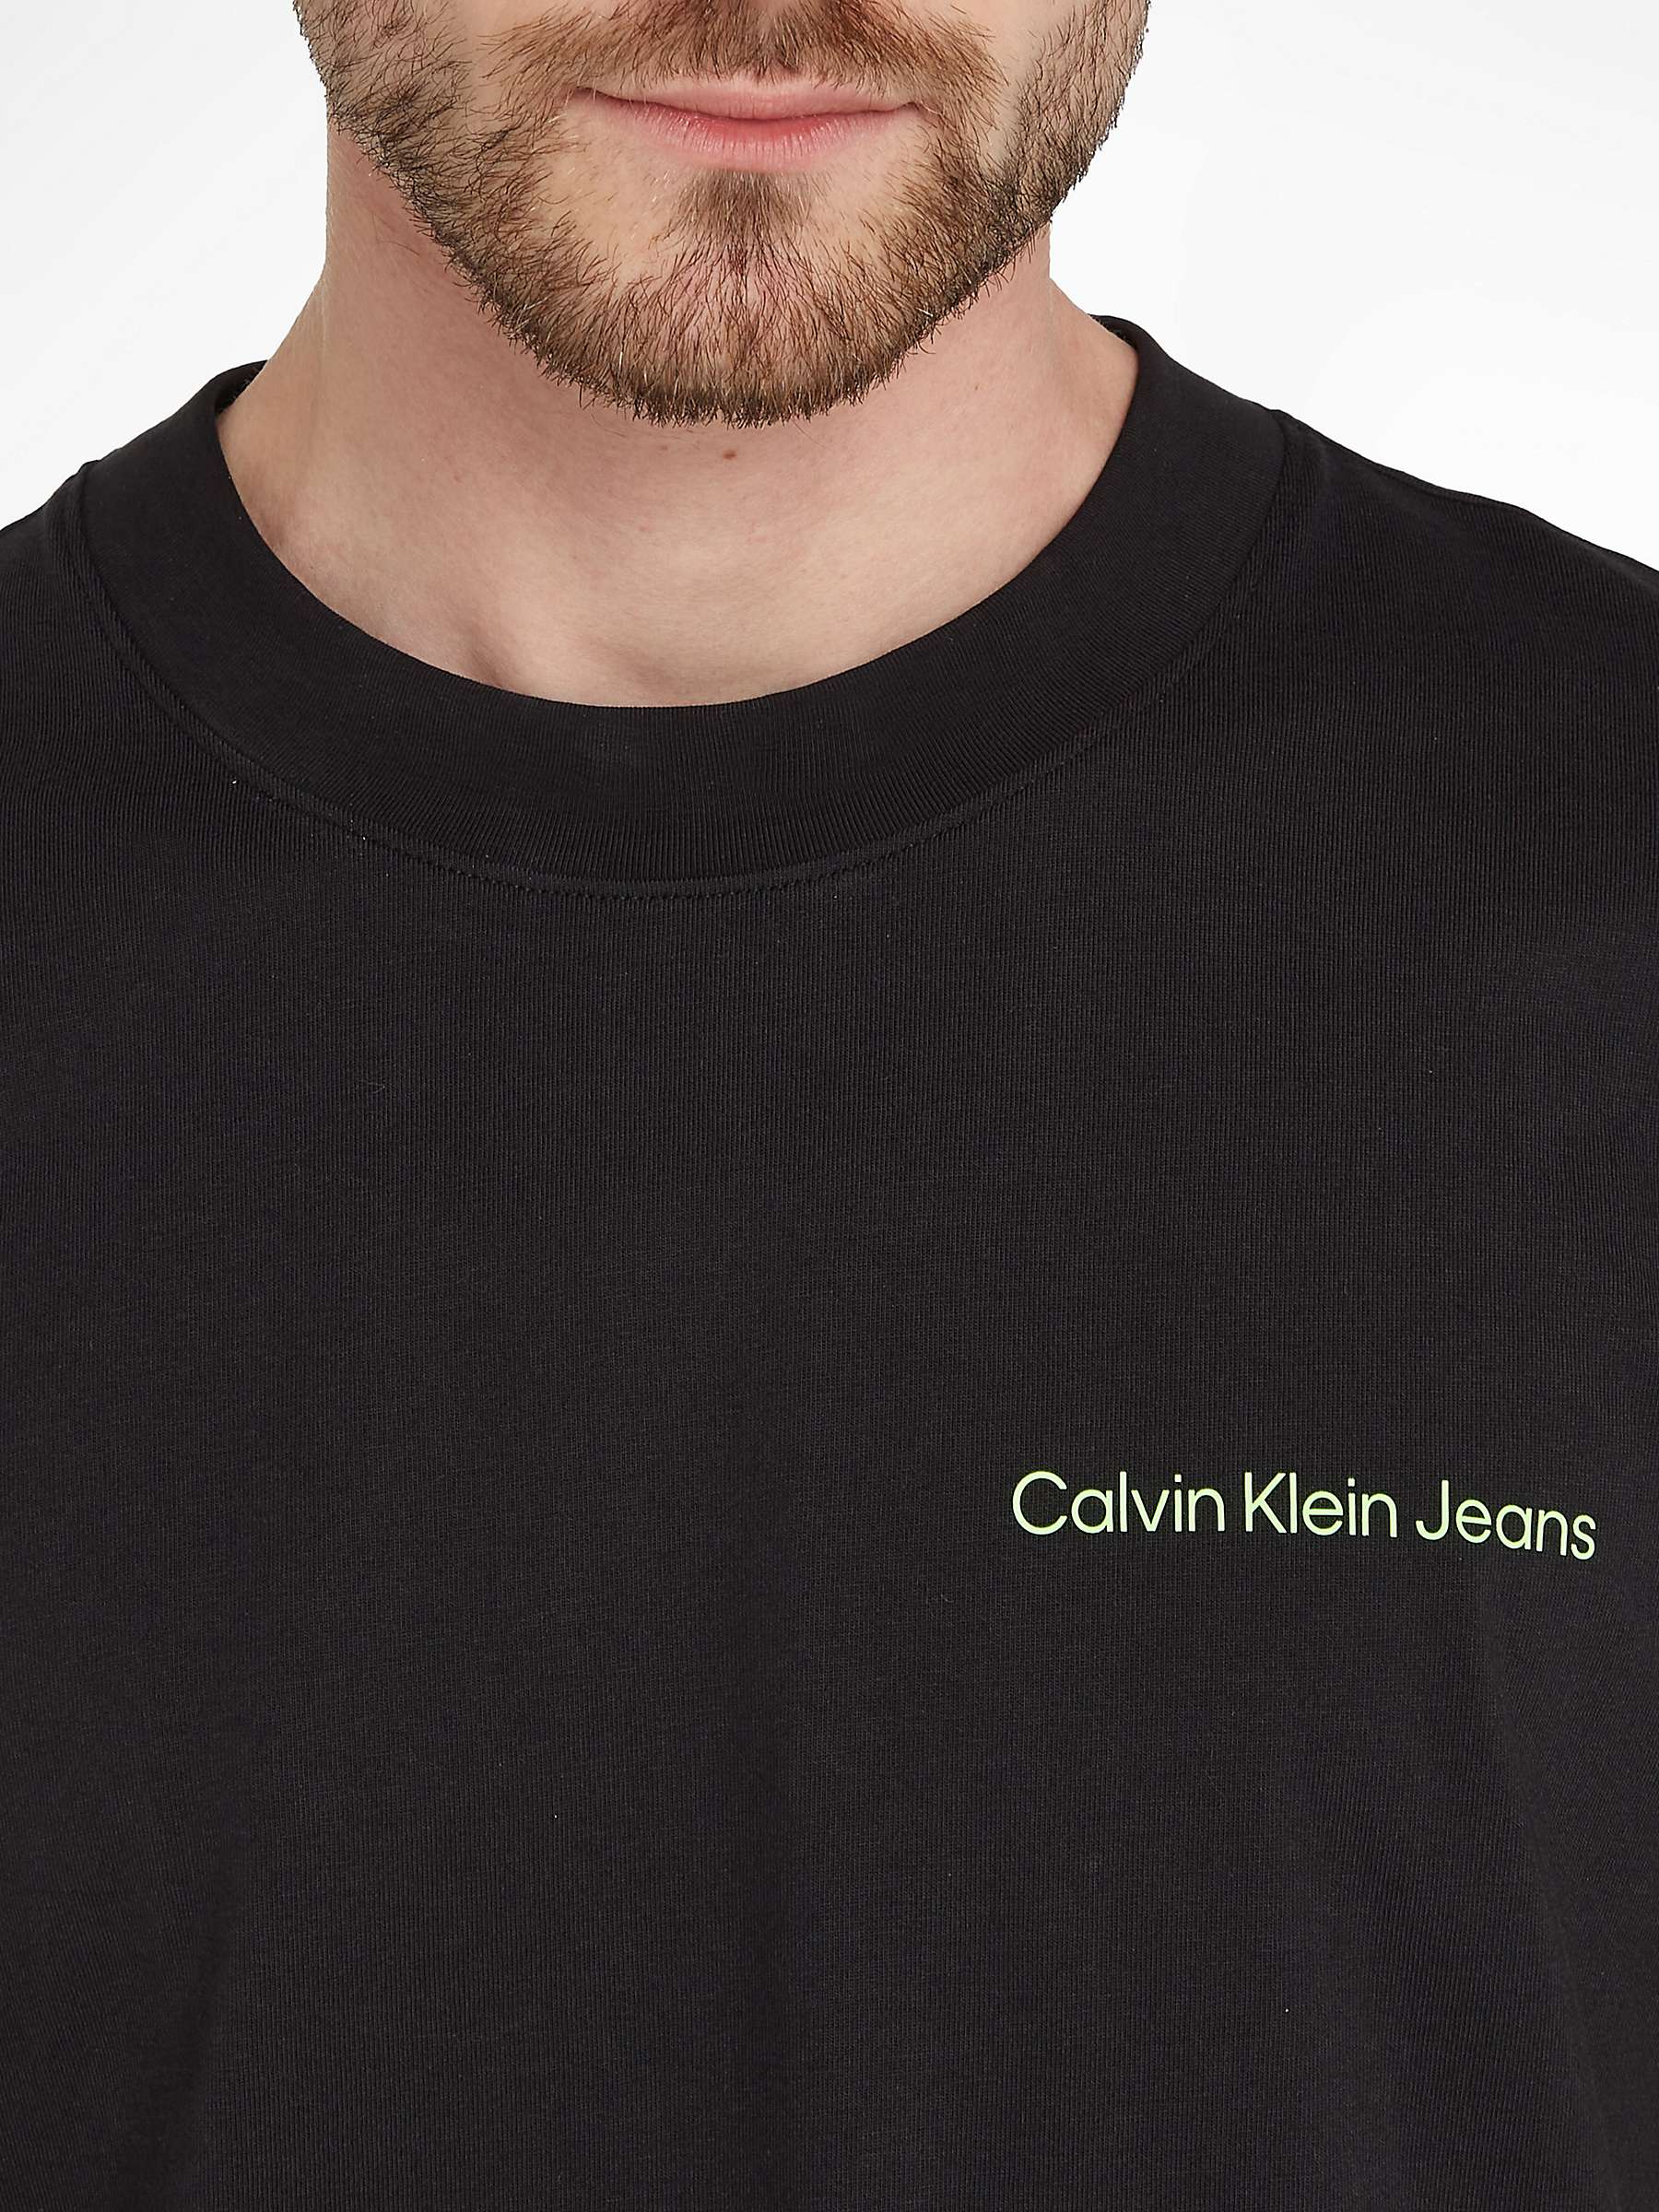 Calvin Klein Jeans Tape Logo T-shirt, Black at John Lewis & Partners